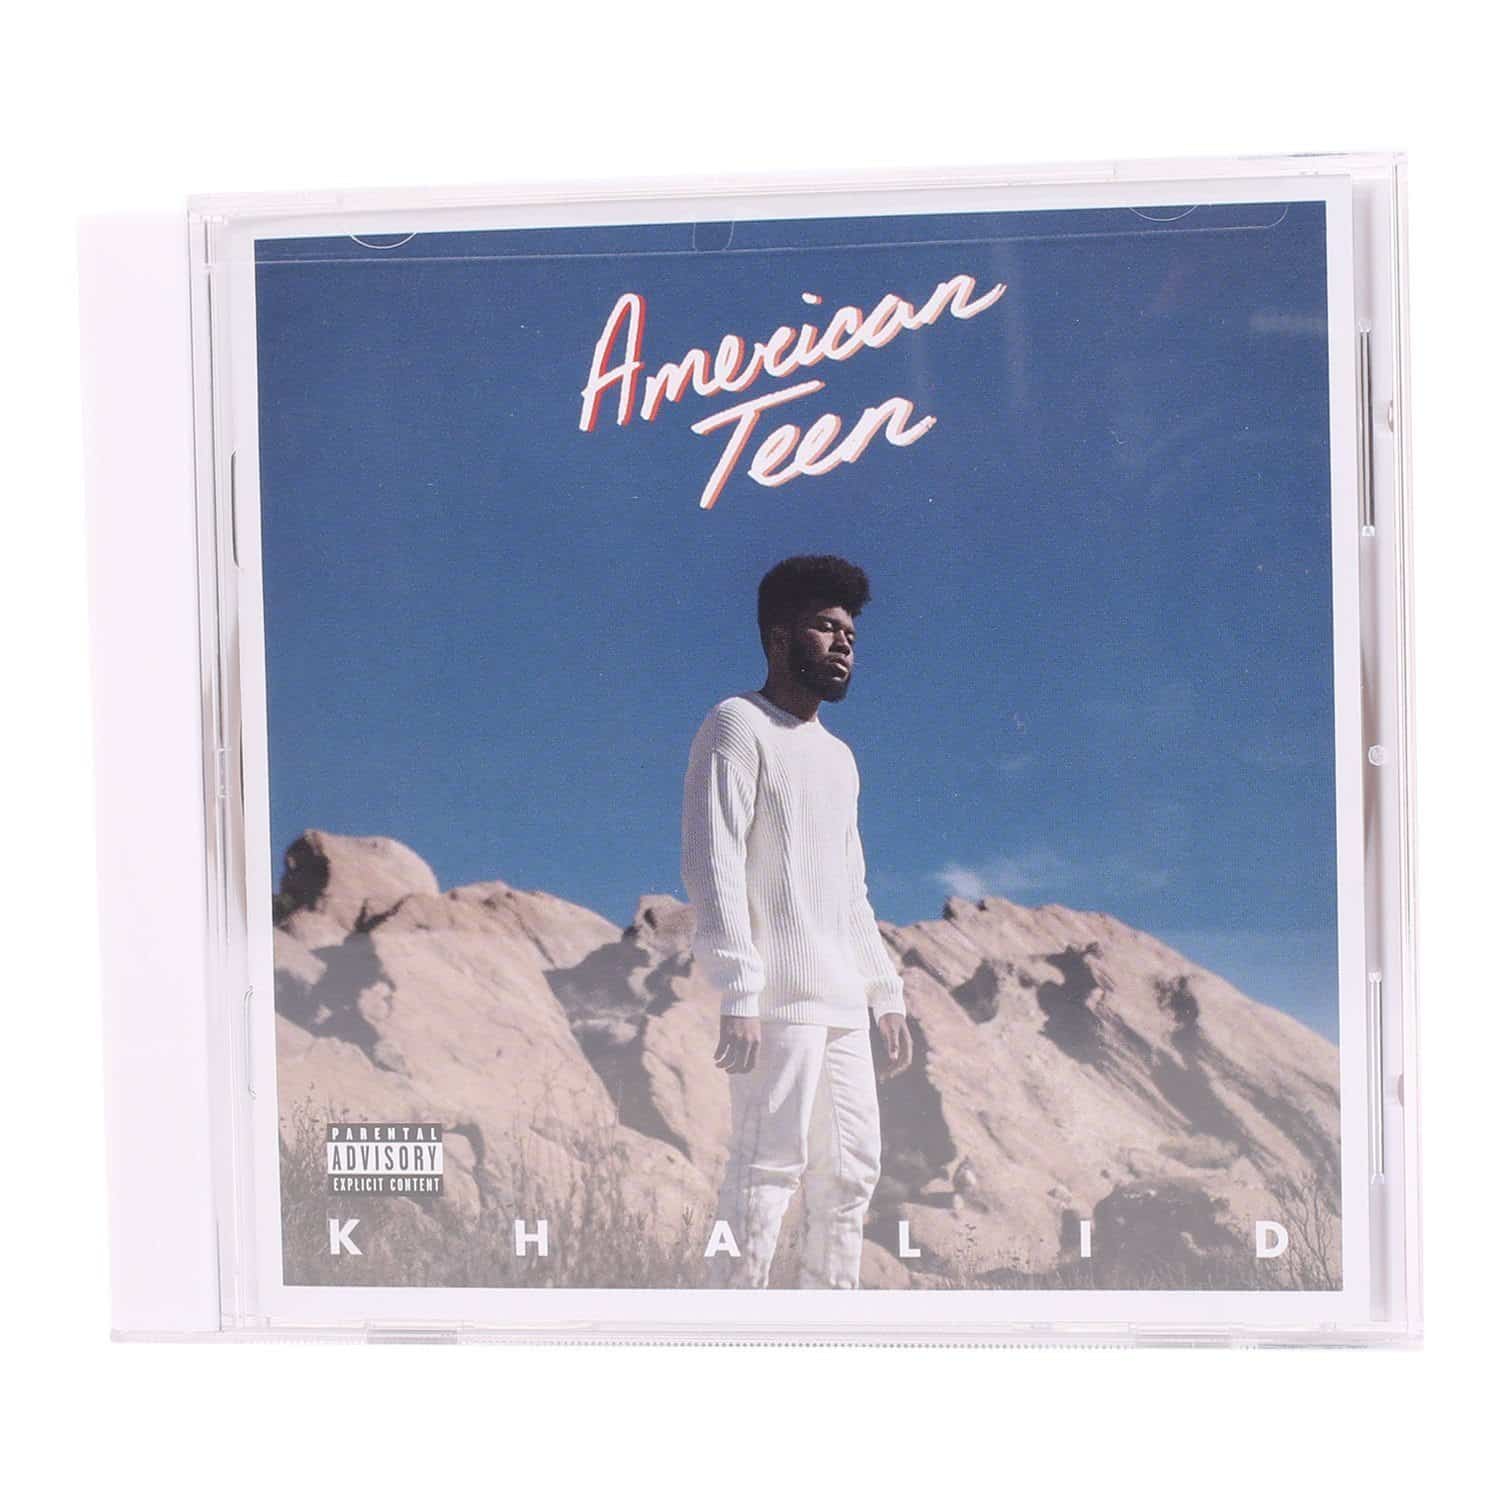 american teen album download